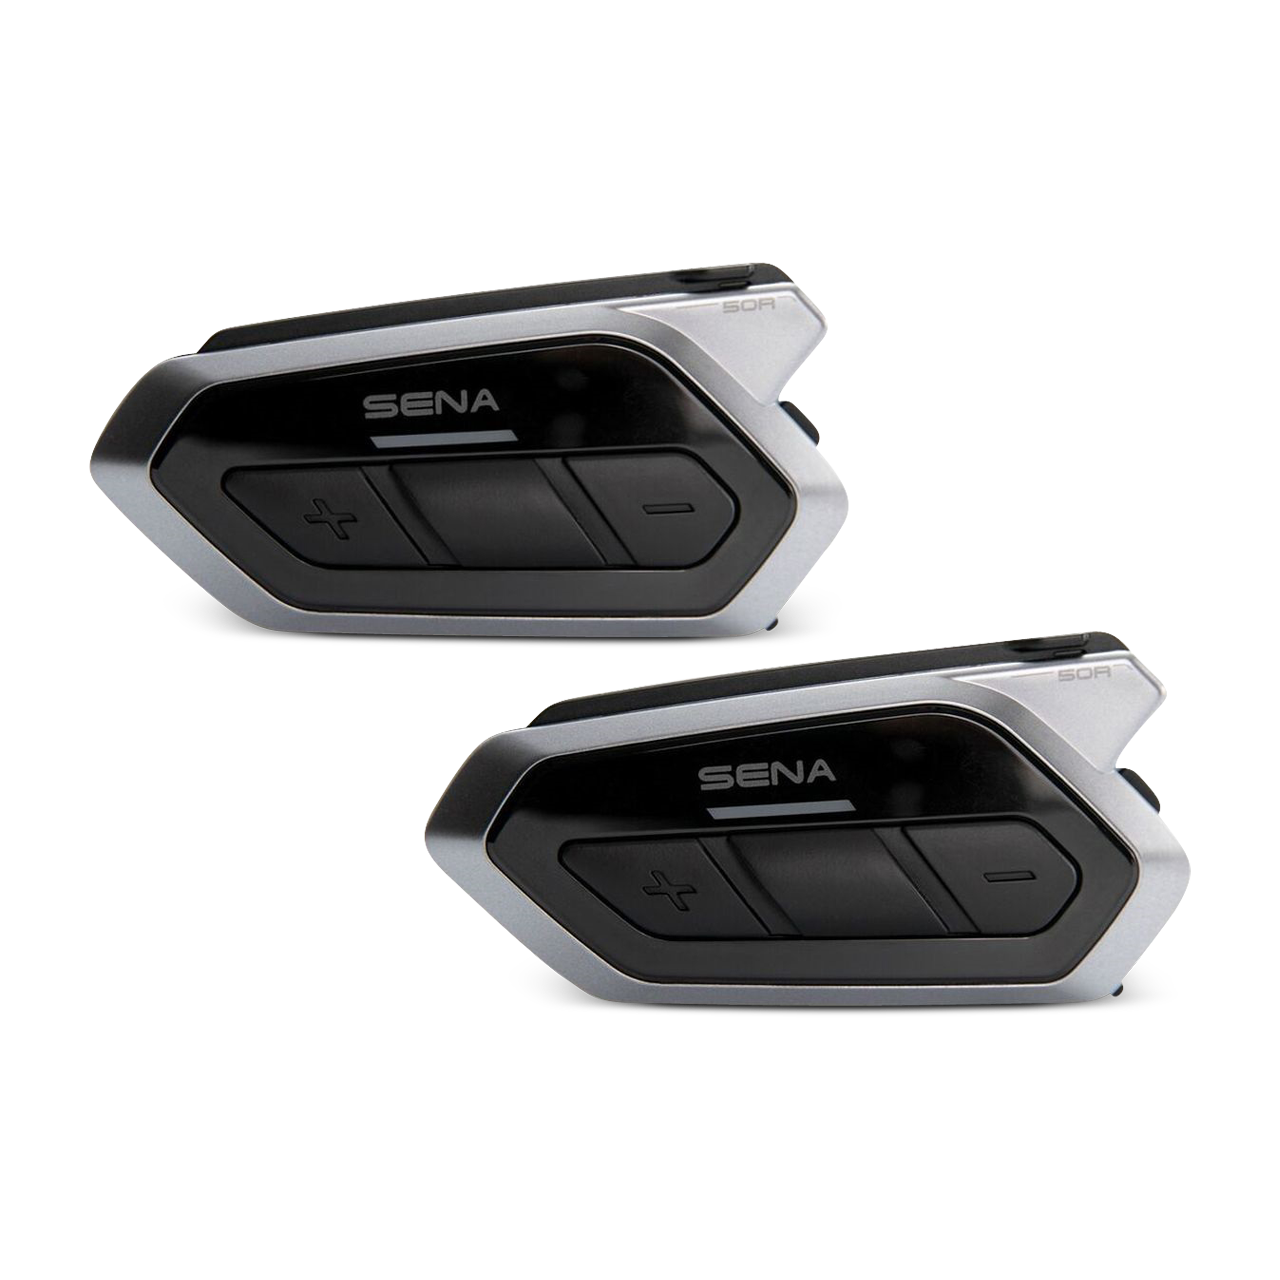 Sena 50R Mesh 2.0 By Harman Kardon Dual Pack Intercom - Now 26% Savings